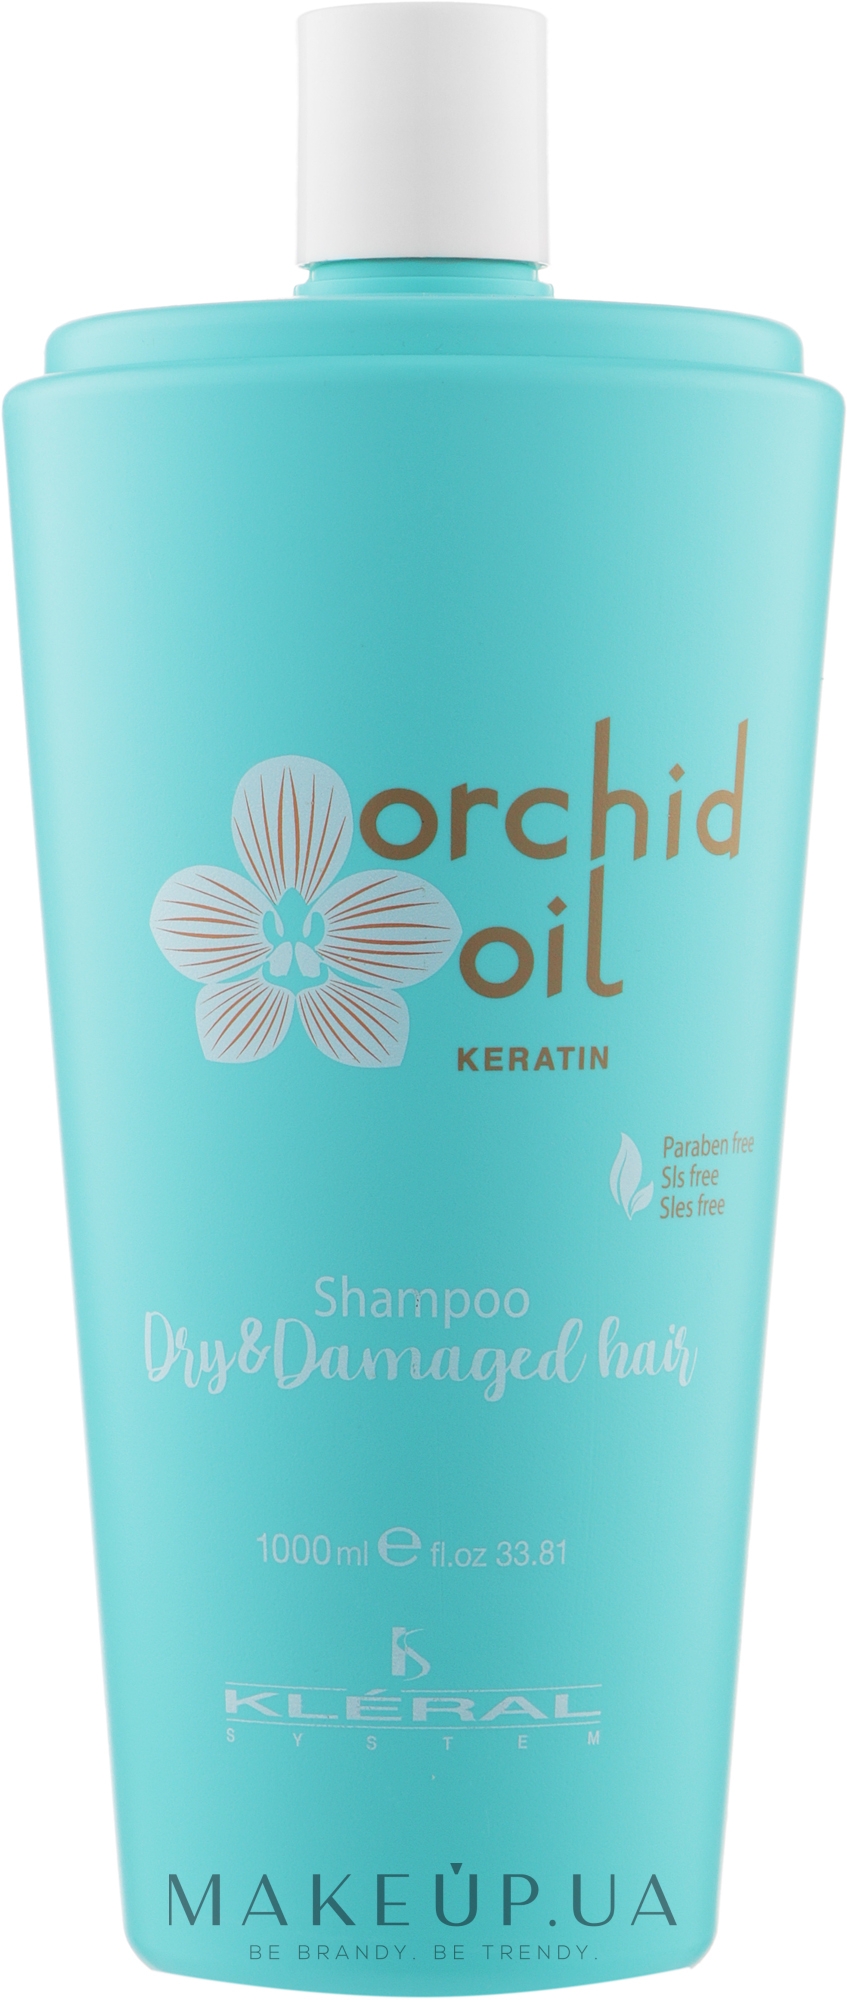 Шампунь для волос с маслом орхидеи - Kleral System Orchid Oil Shampoo  — фото 1000ml